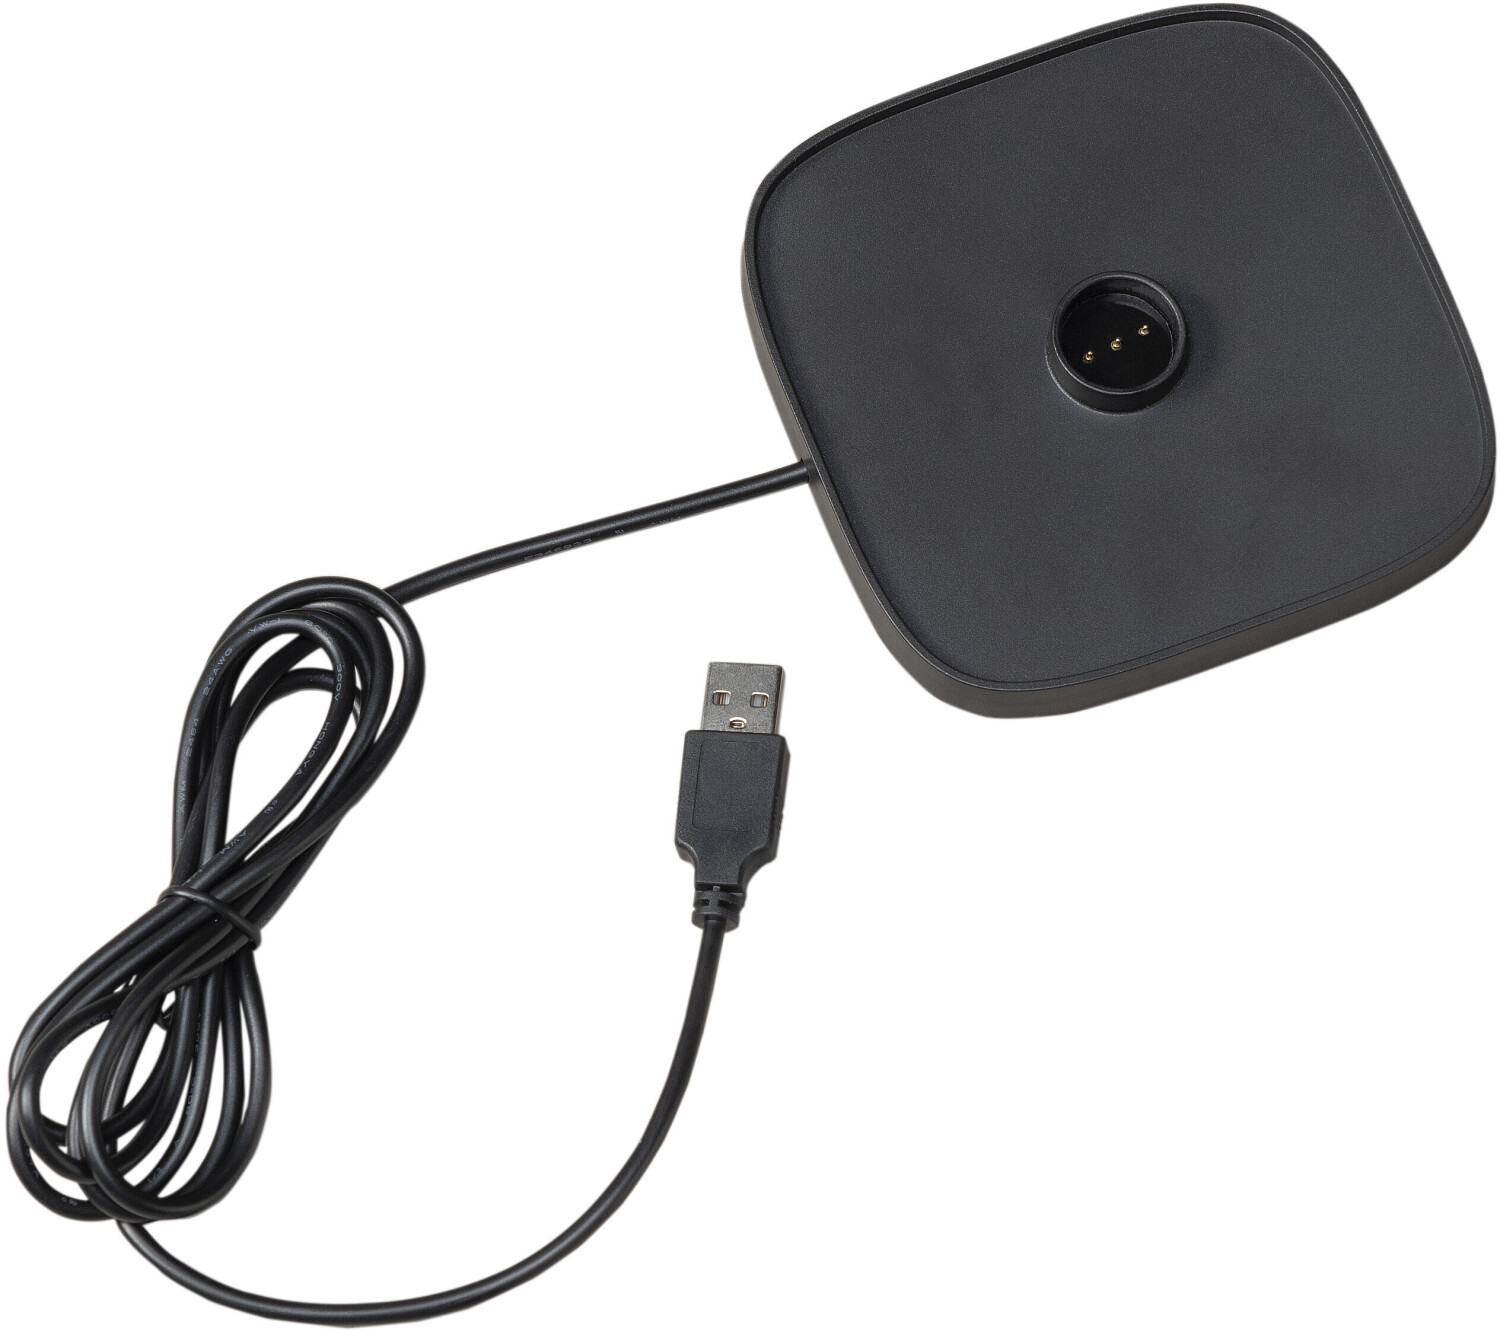 Konstsmide Capri USB-Tischleuchte LED schwarz (7814-750) ab 64,99 € |  Preisvergleich bei